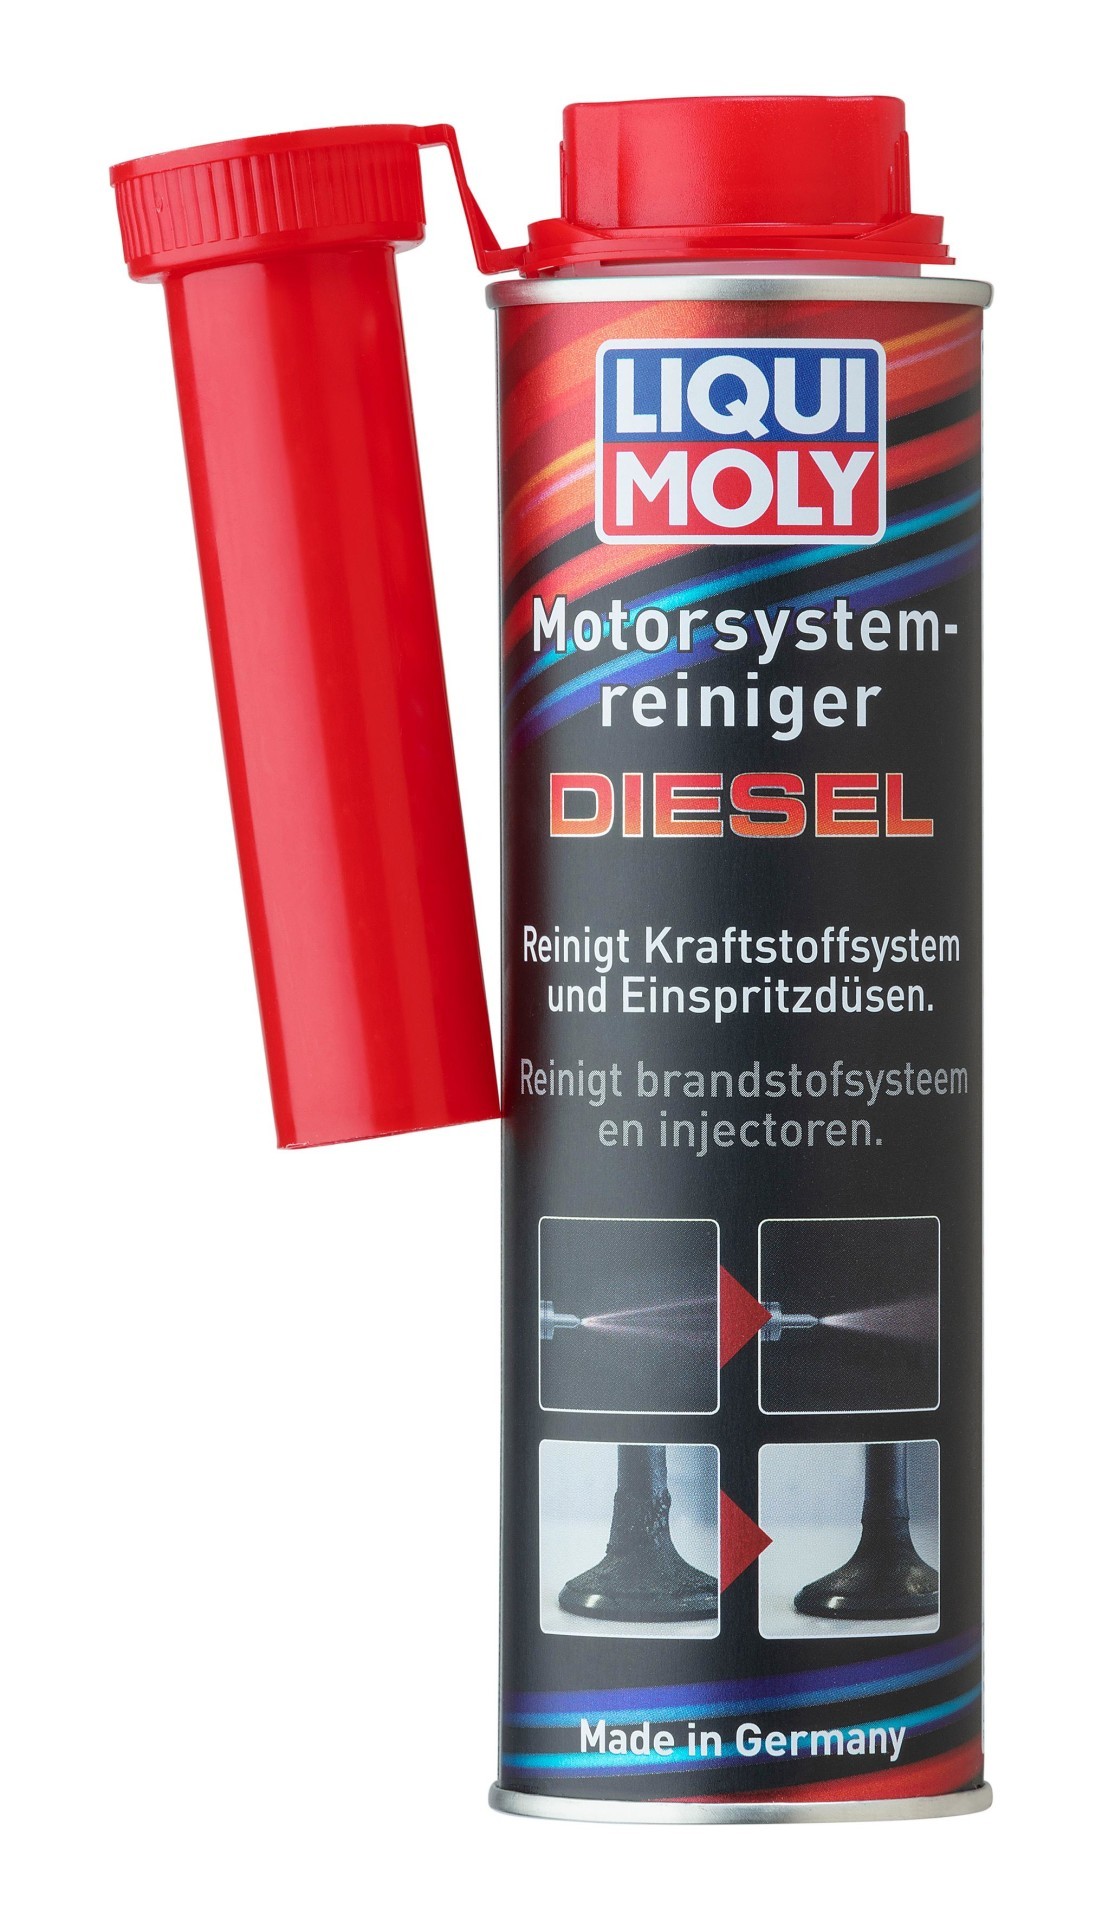 LIQUI MOLY Additiv "Diesel Motor System-Reiniger (300 ml)", Art.-Nr. 5128